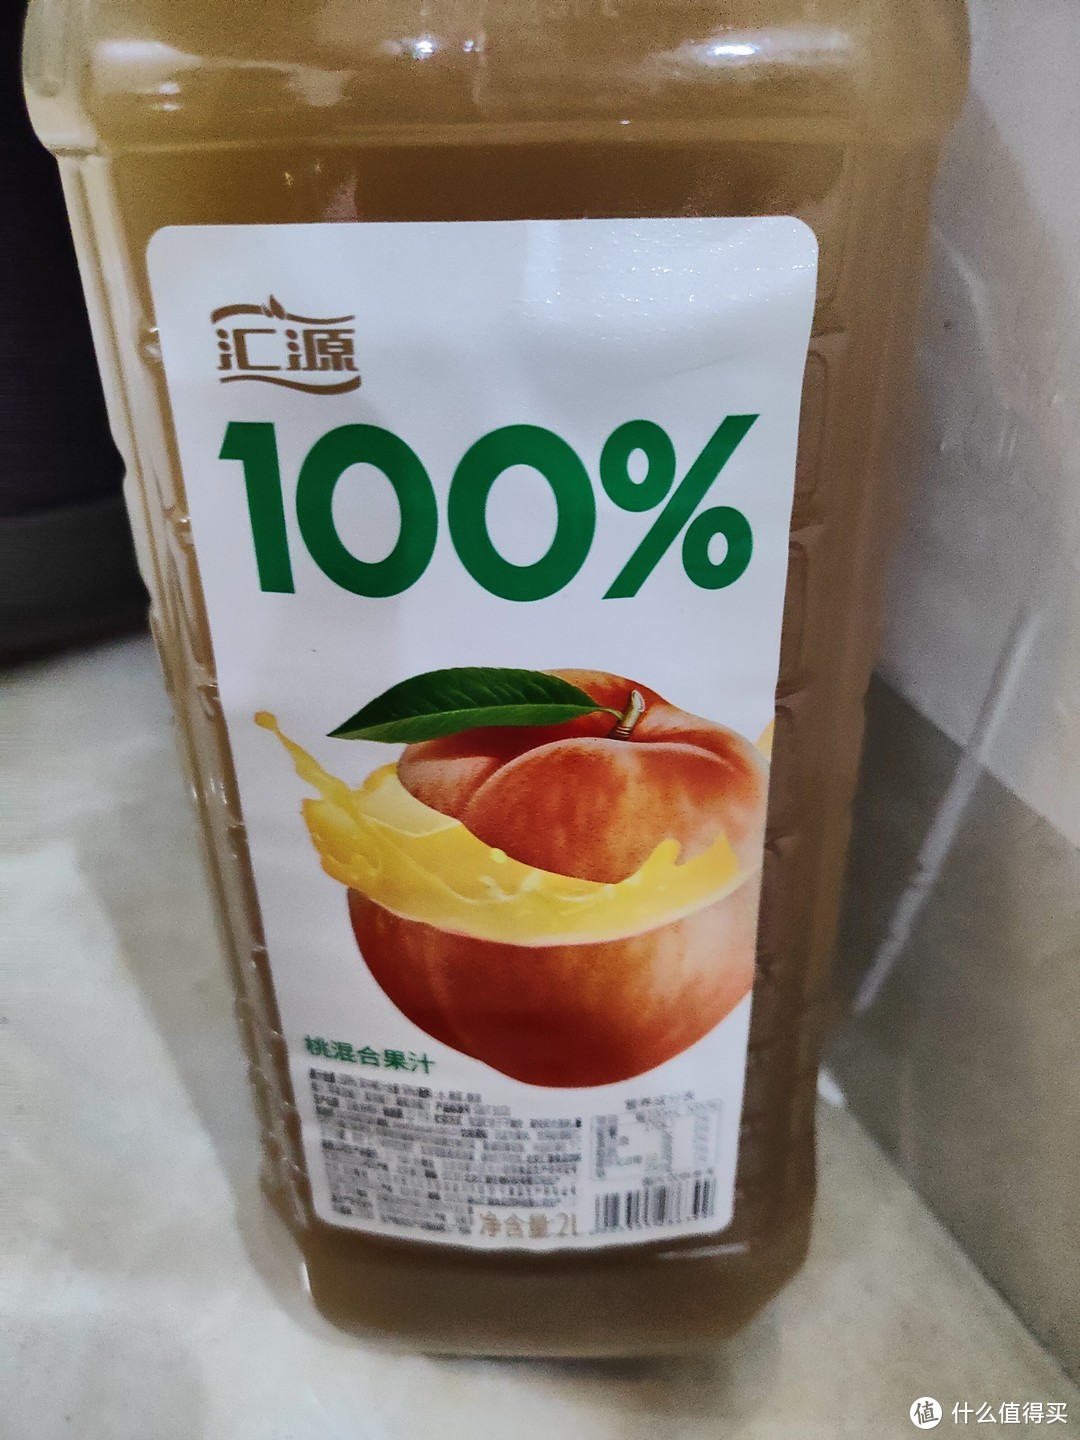 100%果汁让人更放心